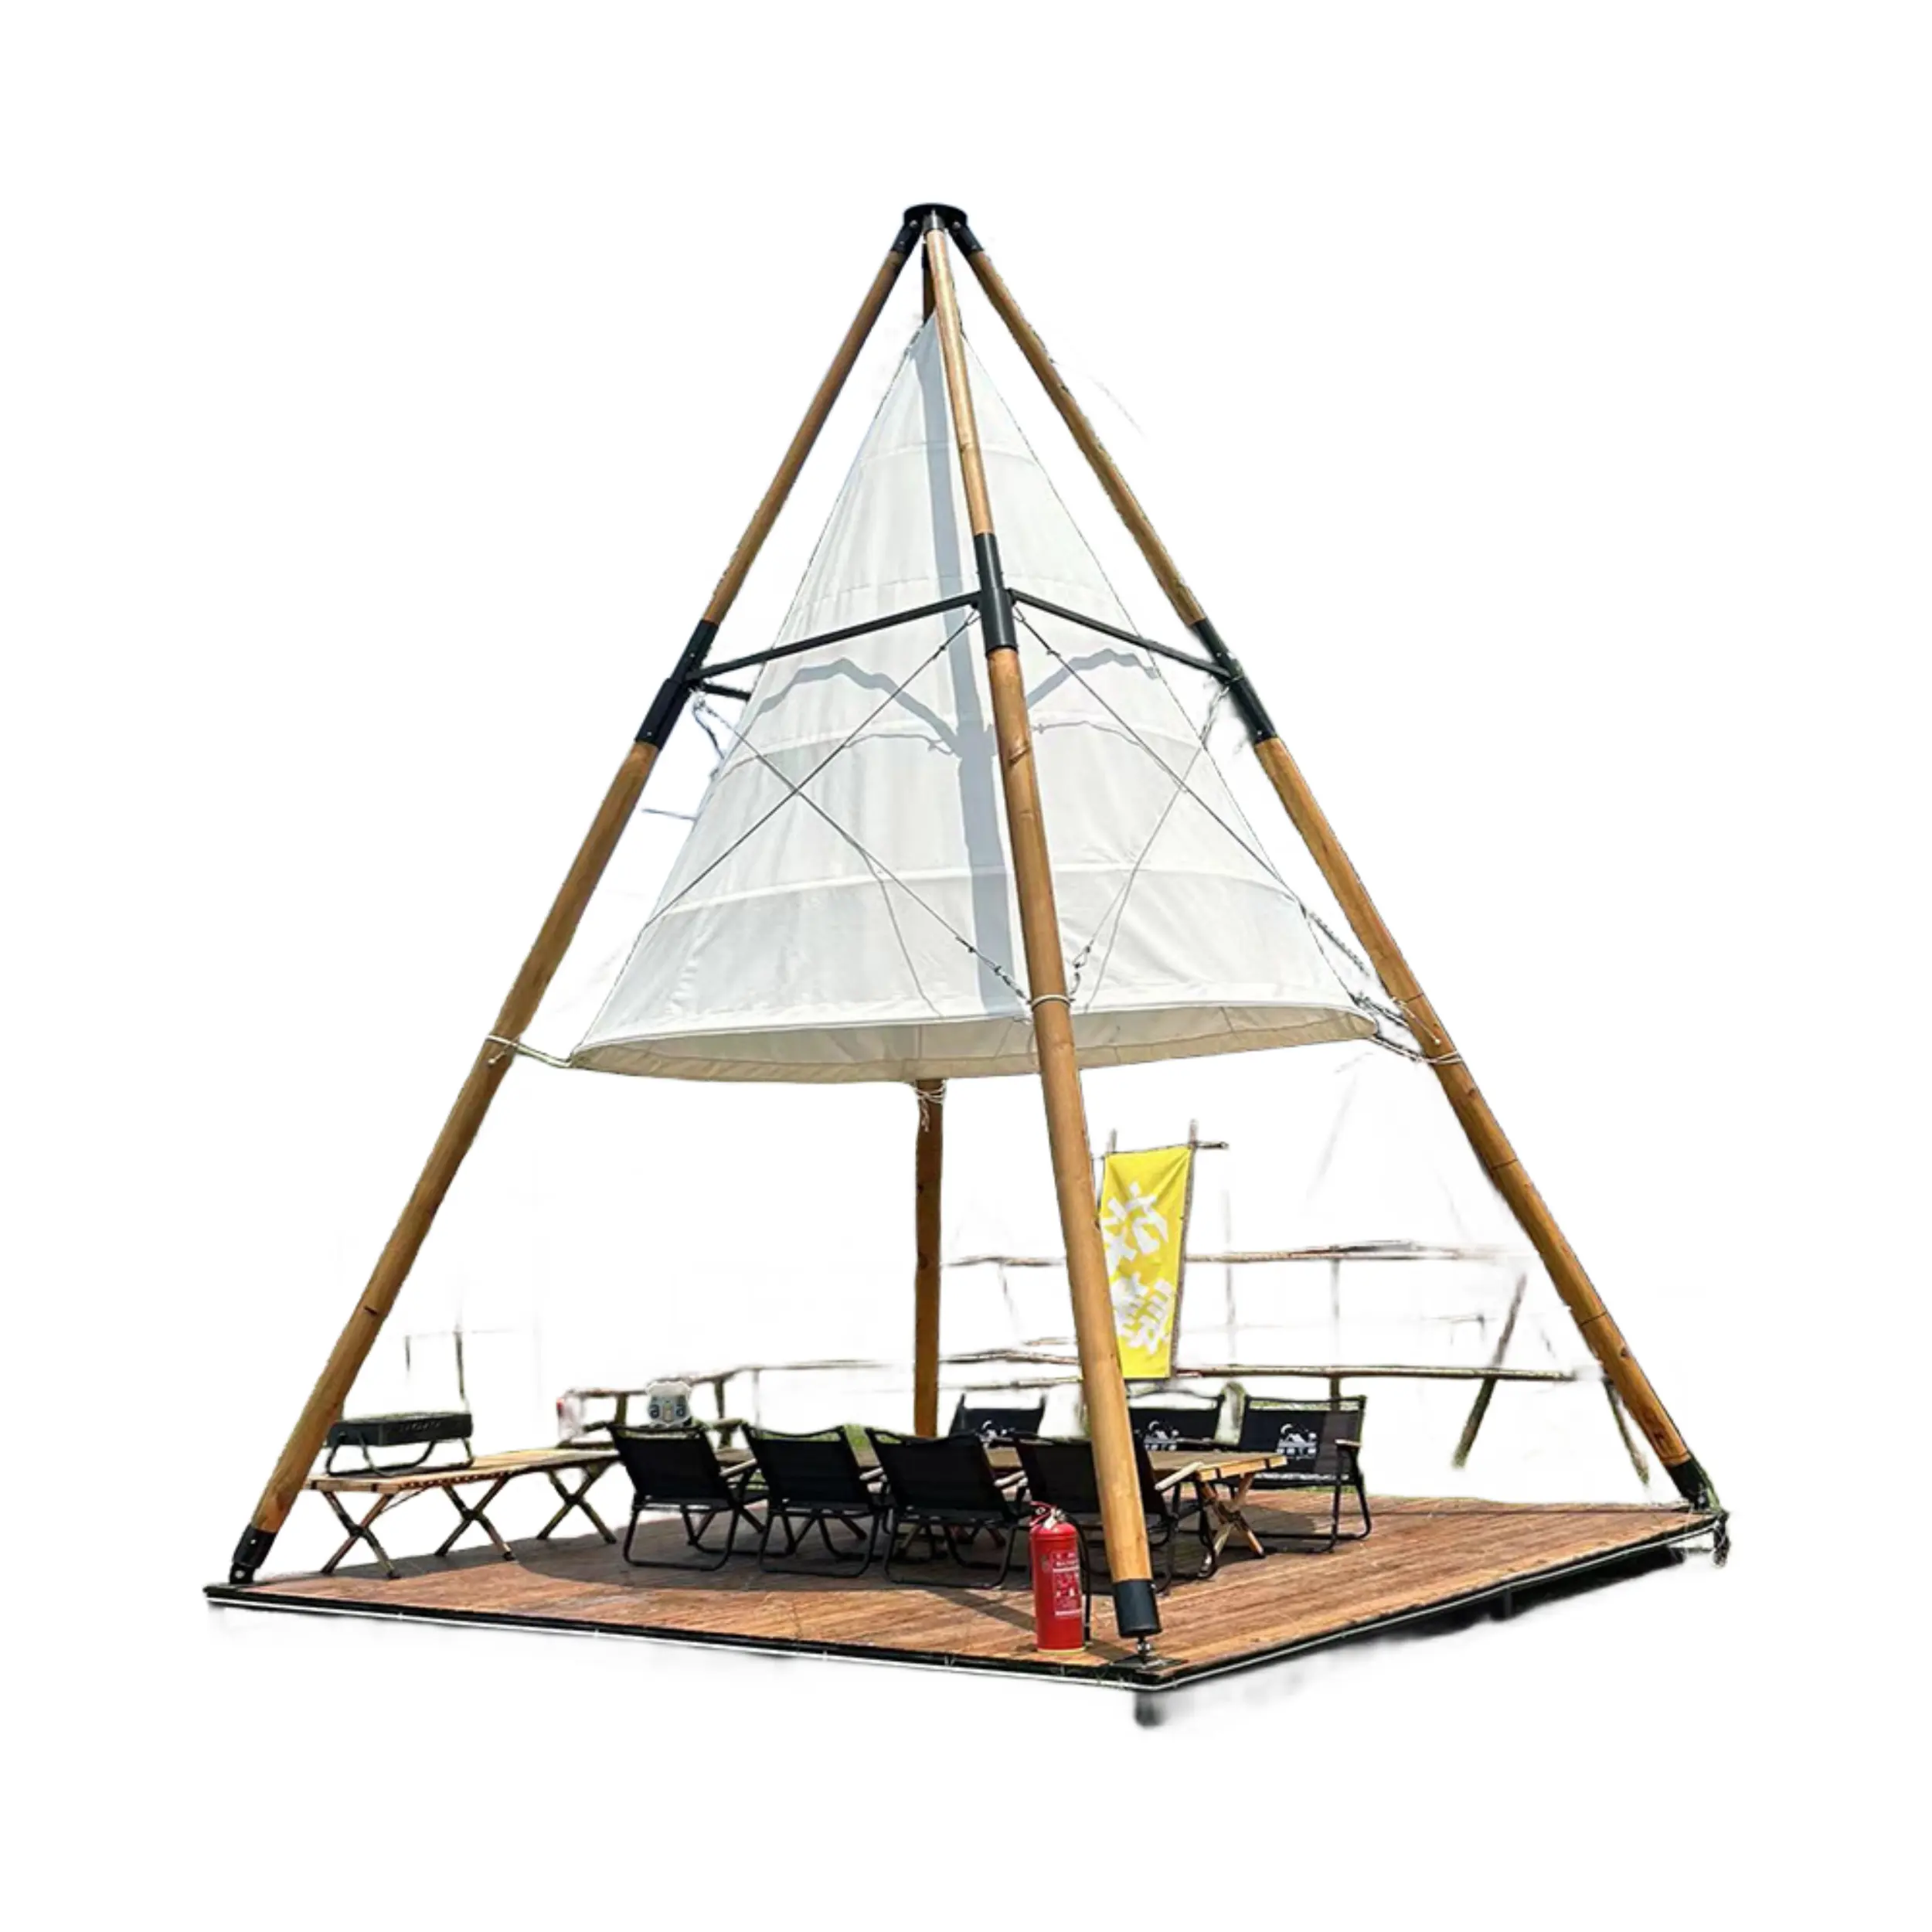 Tente lanterne extérieure imperméable en toile pour grande fête de camping Tente pyramidale Tipi